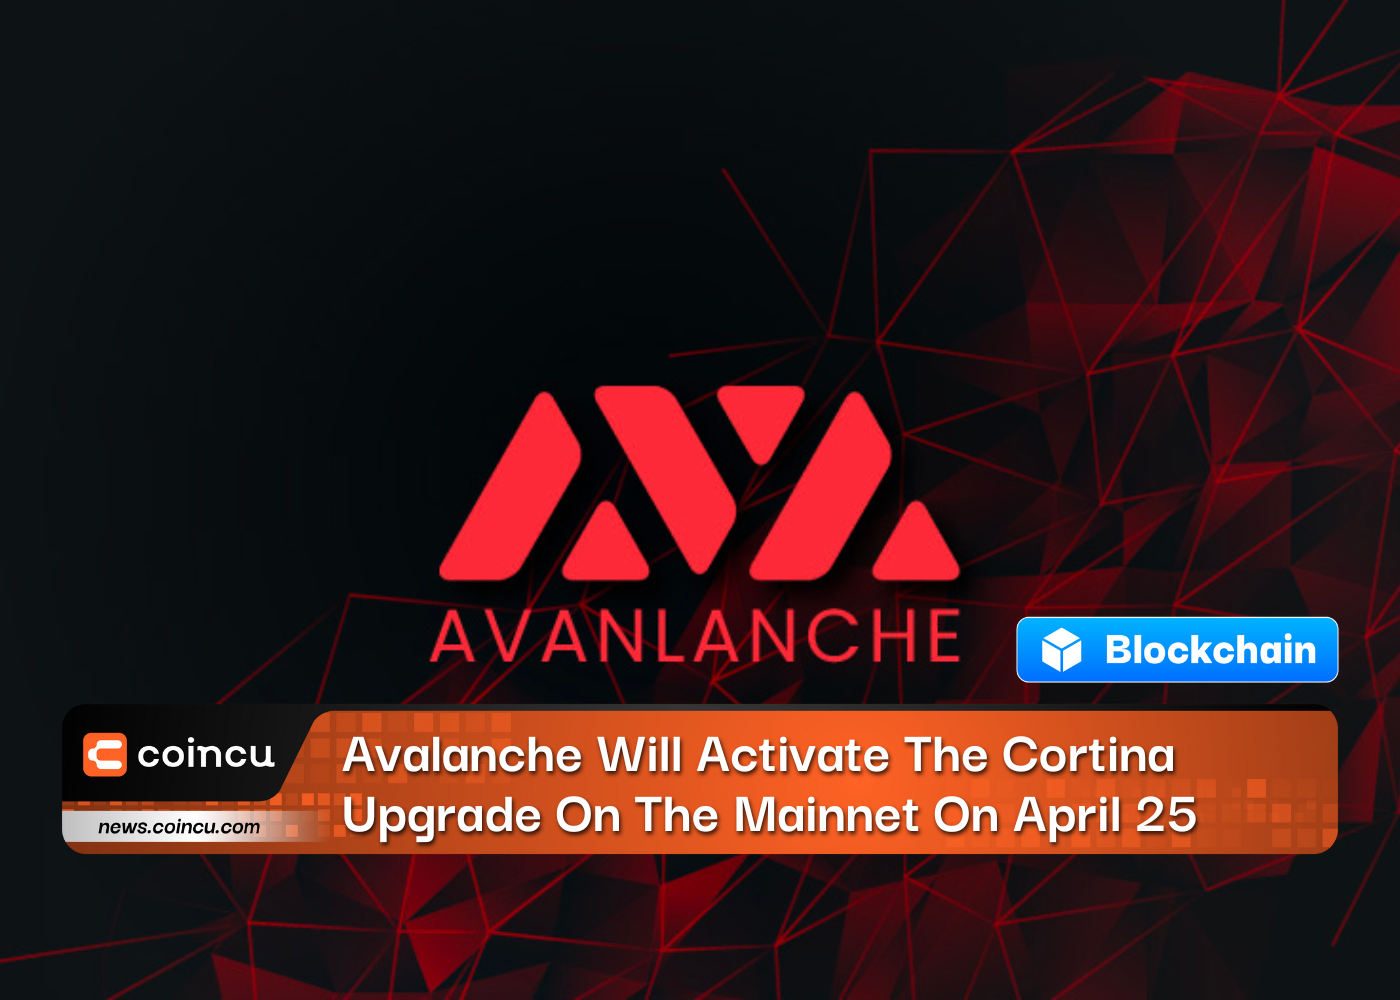 Avalanche는 25월 XNUMX일에 메인넷에서 Cortina 업그레이드를 활성화합니다